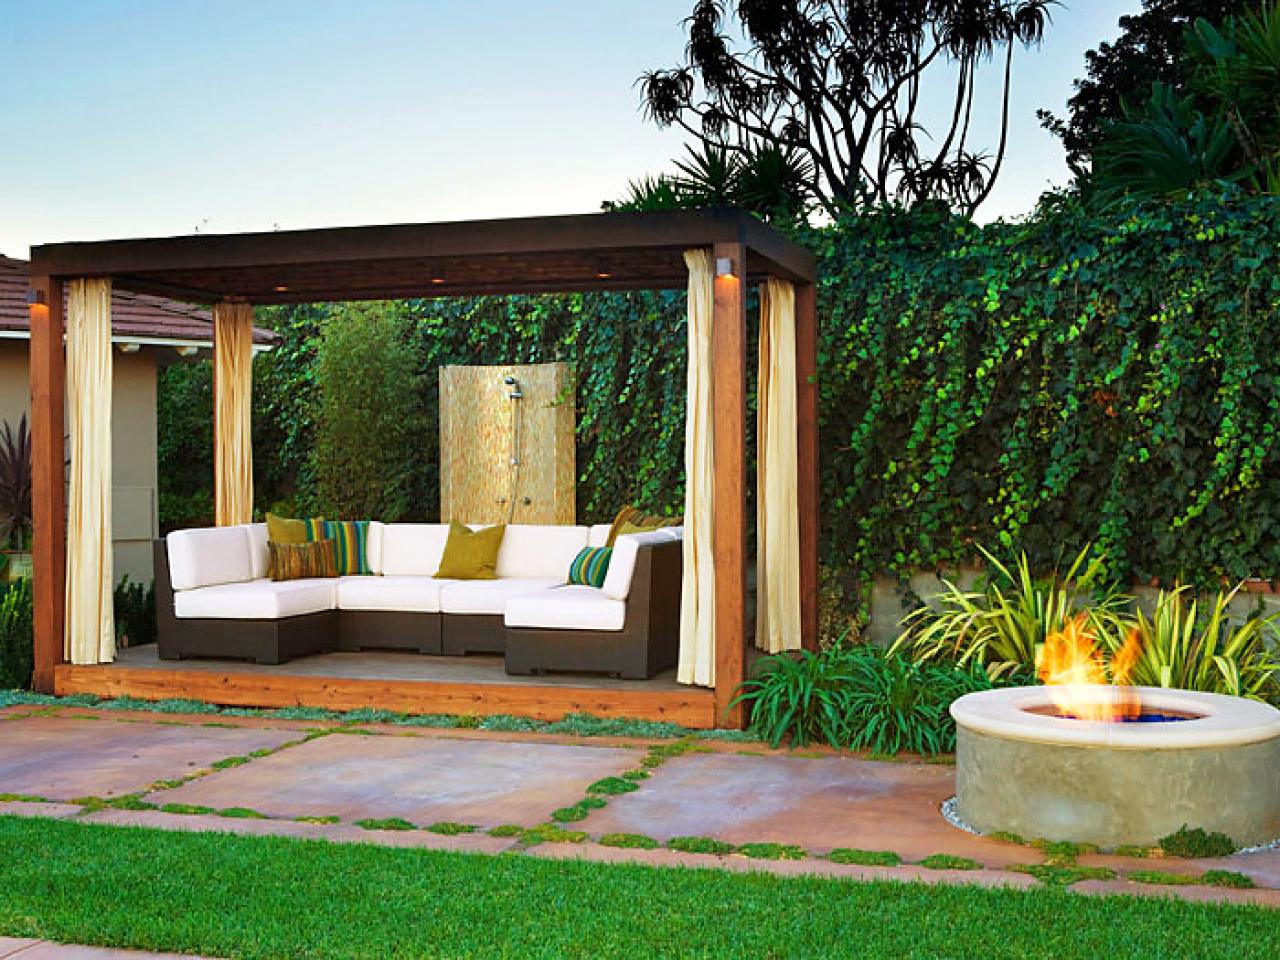 salon de jardin joli canapé blanc design aménagement idée espace extérieur set